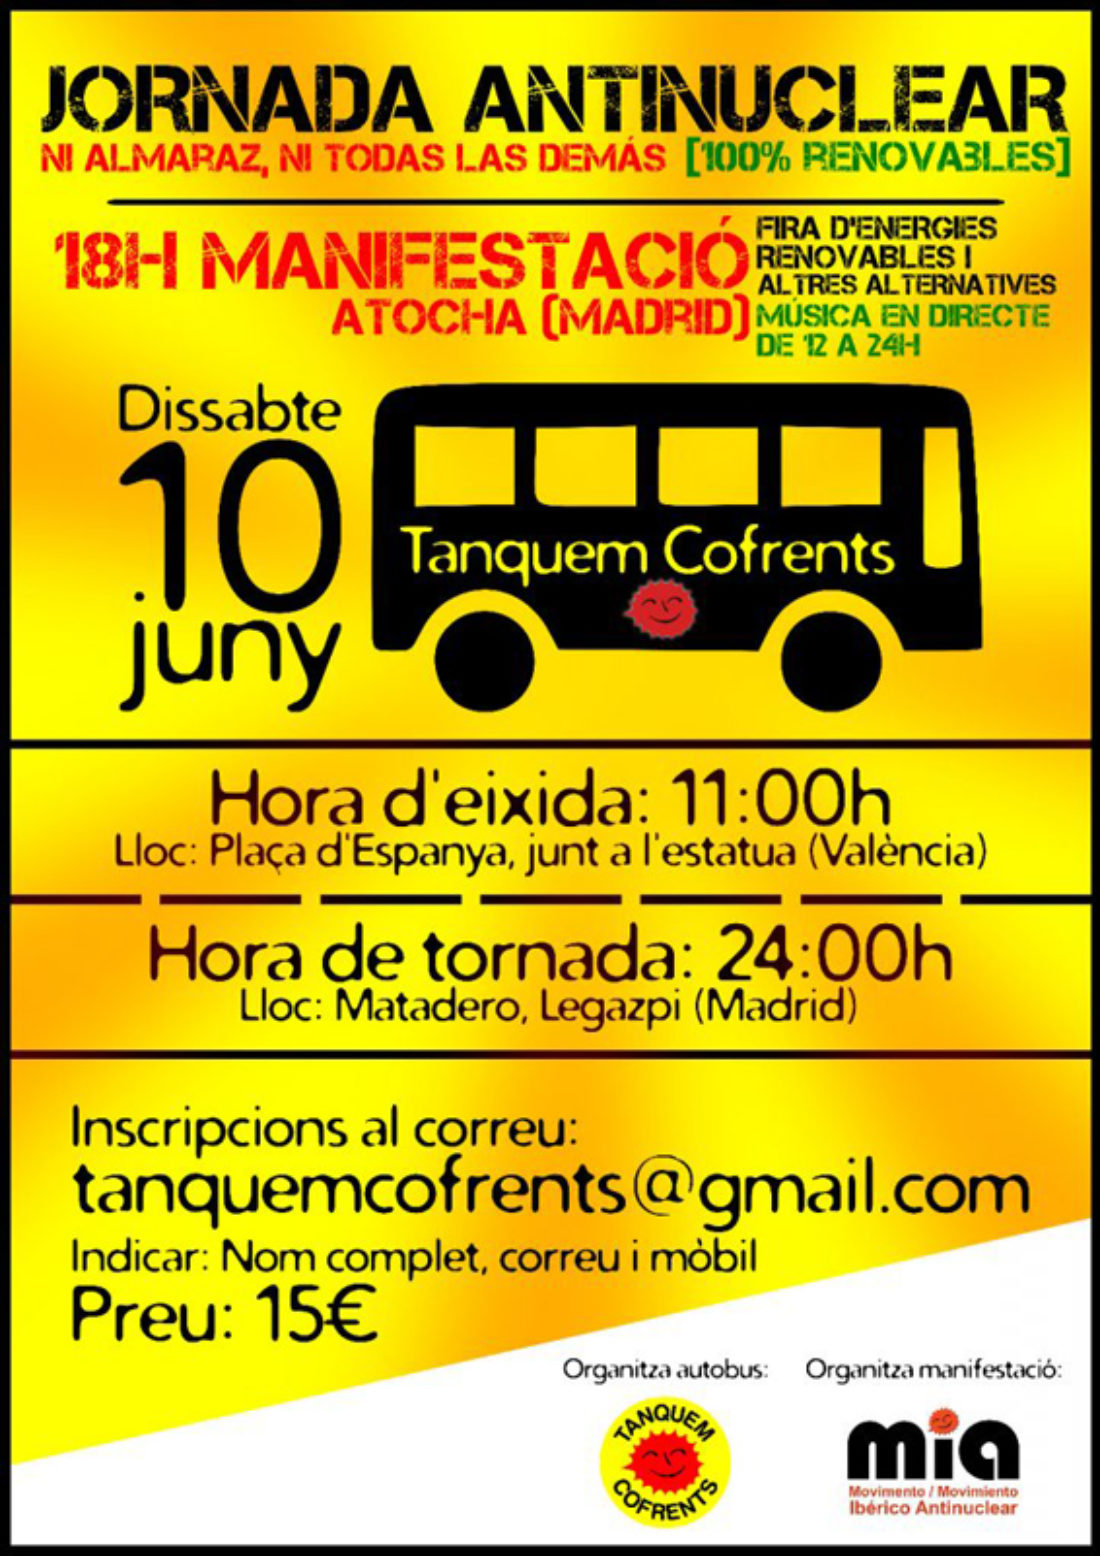 Jornada Antinuclear: Autobús desde València para ir a la manifestación en Madrid